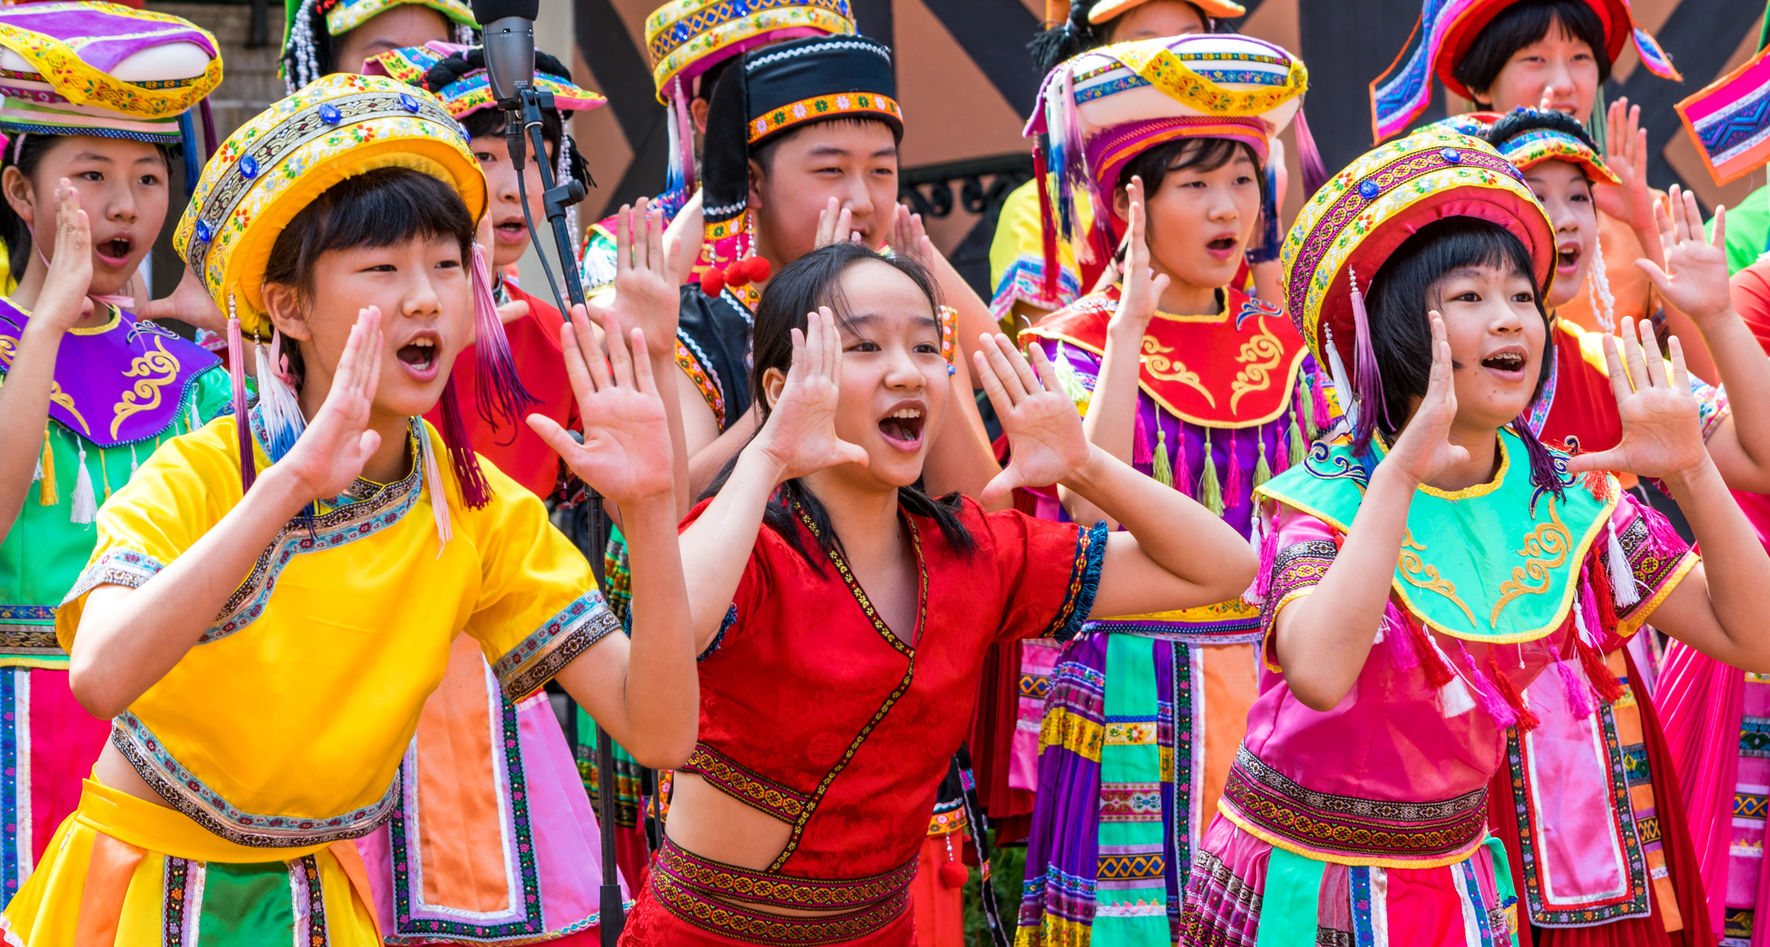 Chinesischer Chor singt in bunter Kleidung